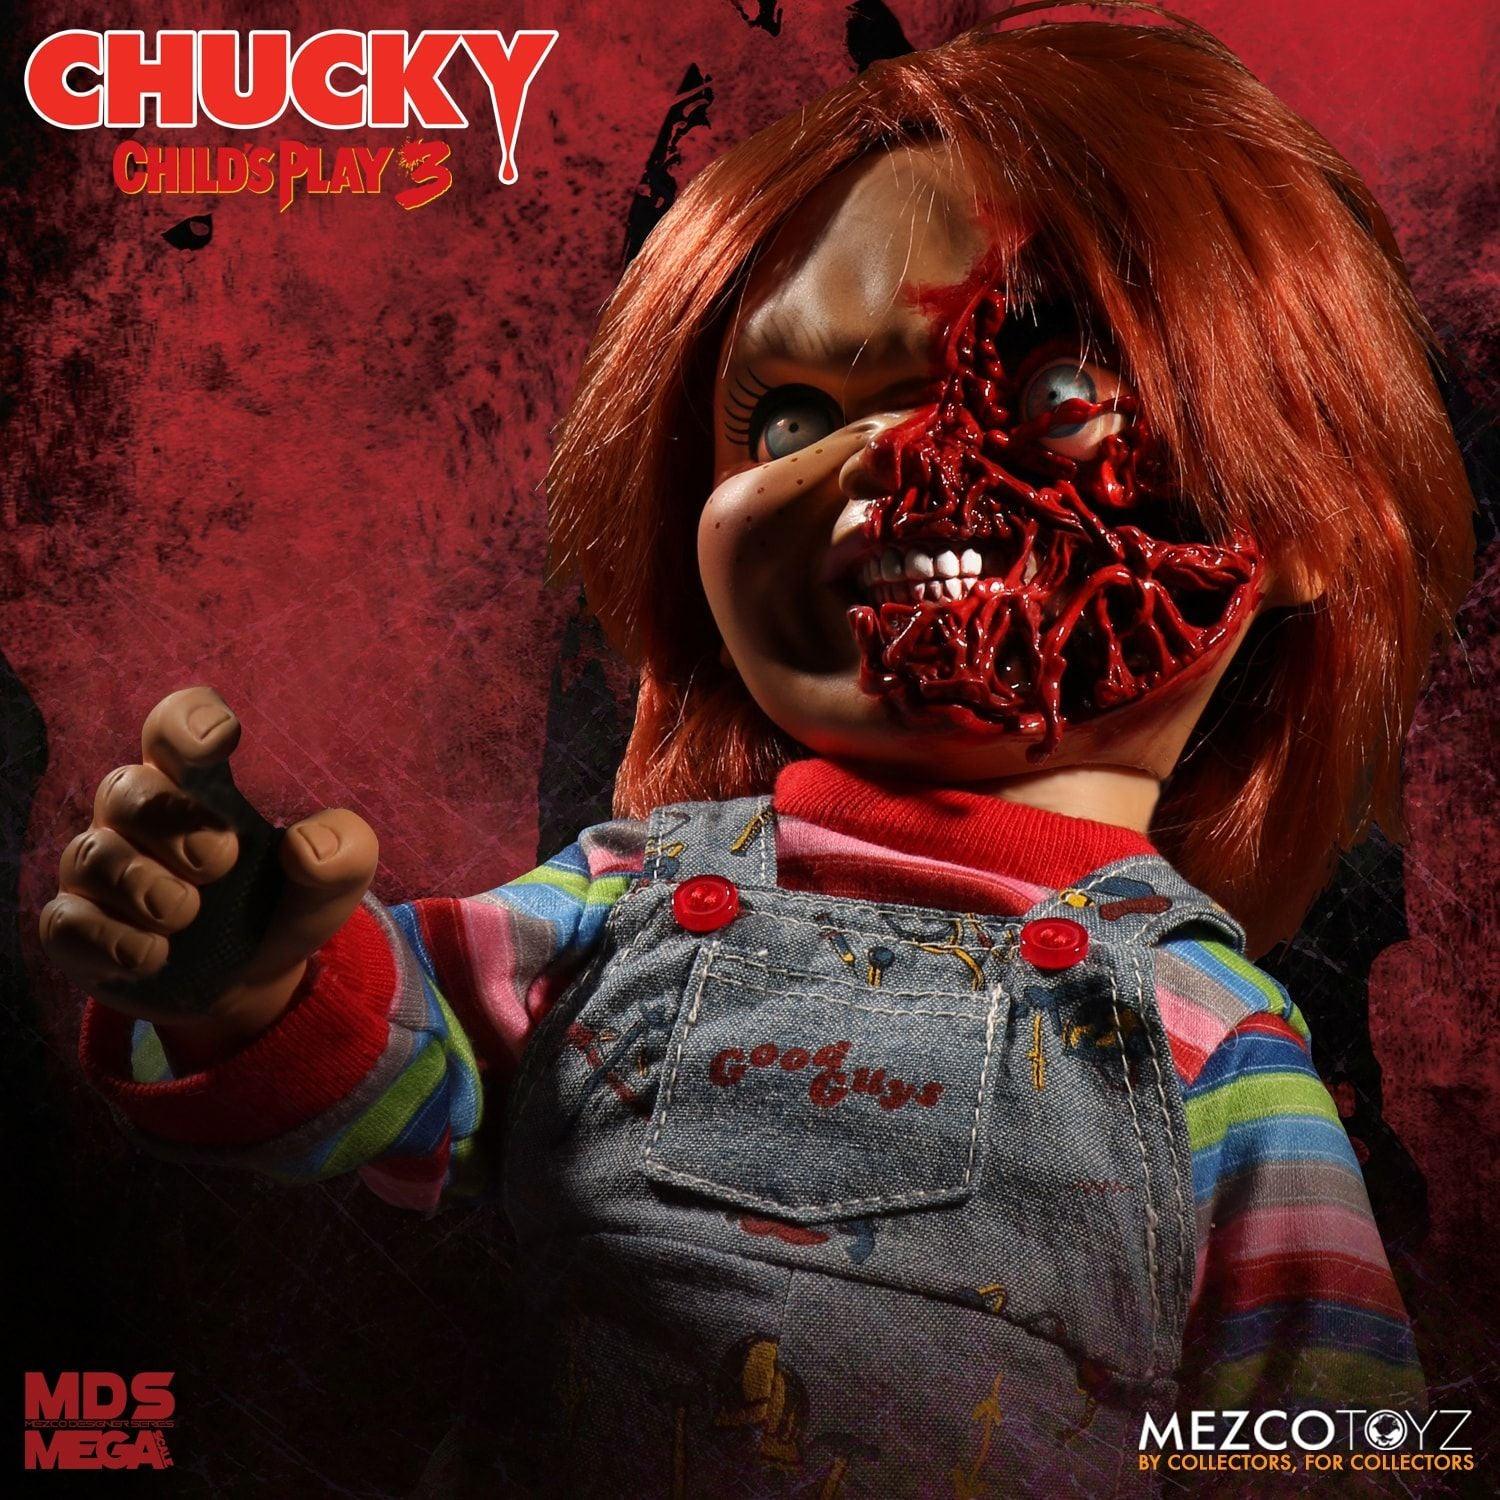 MEZ78020 Child's Play 3 - Chucky Pizza Face 15" Talking Action Figure - Mezco Toyz - Titan Pop Culture